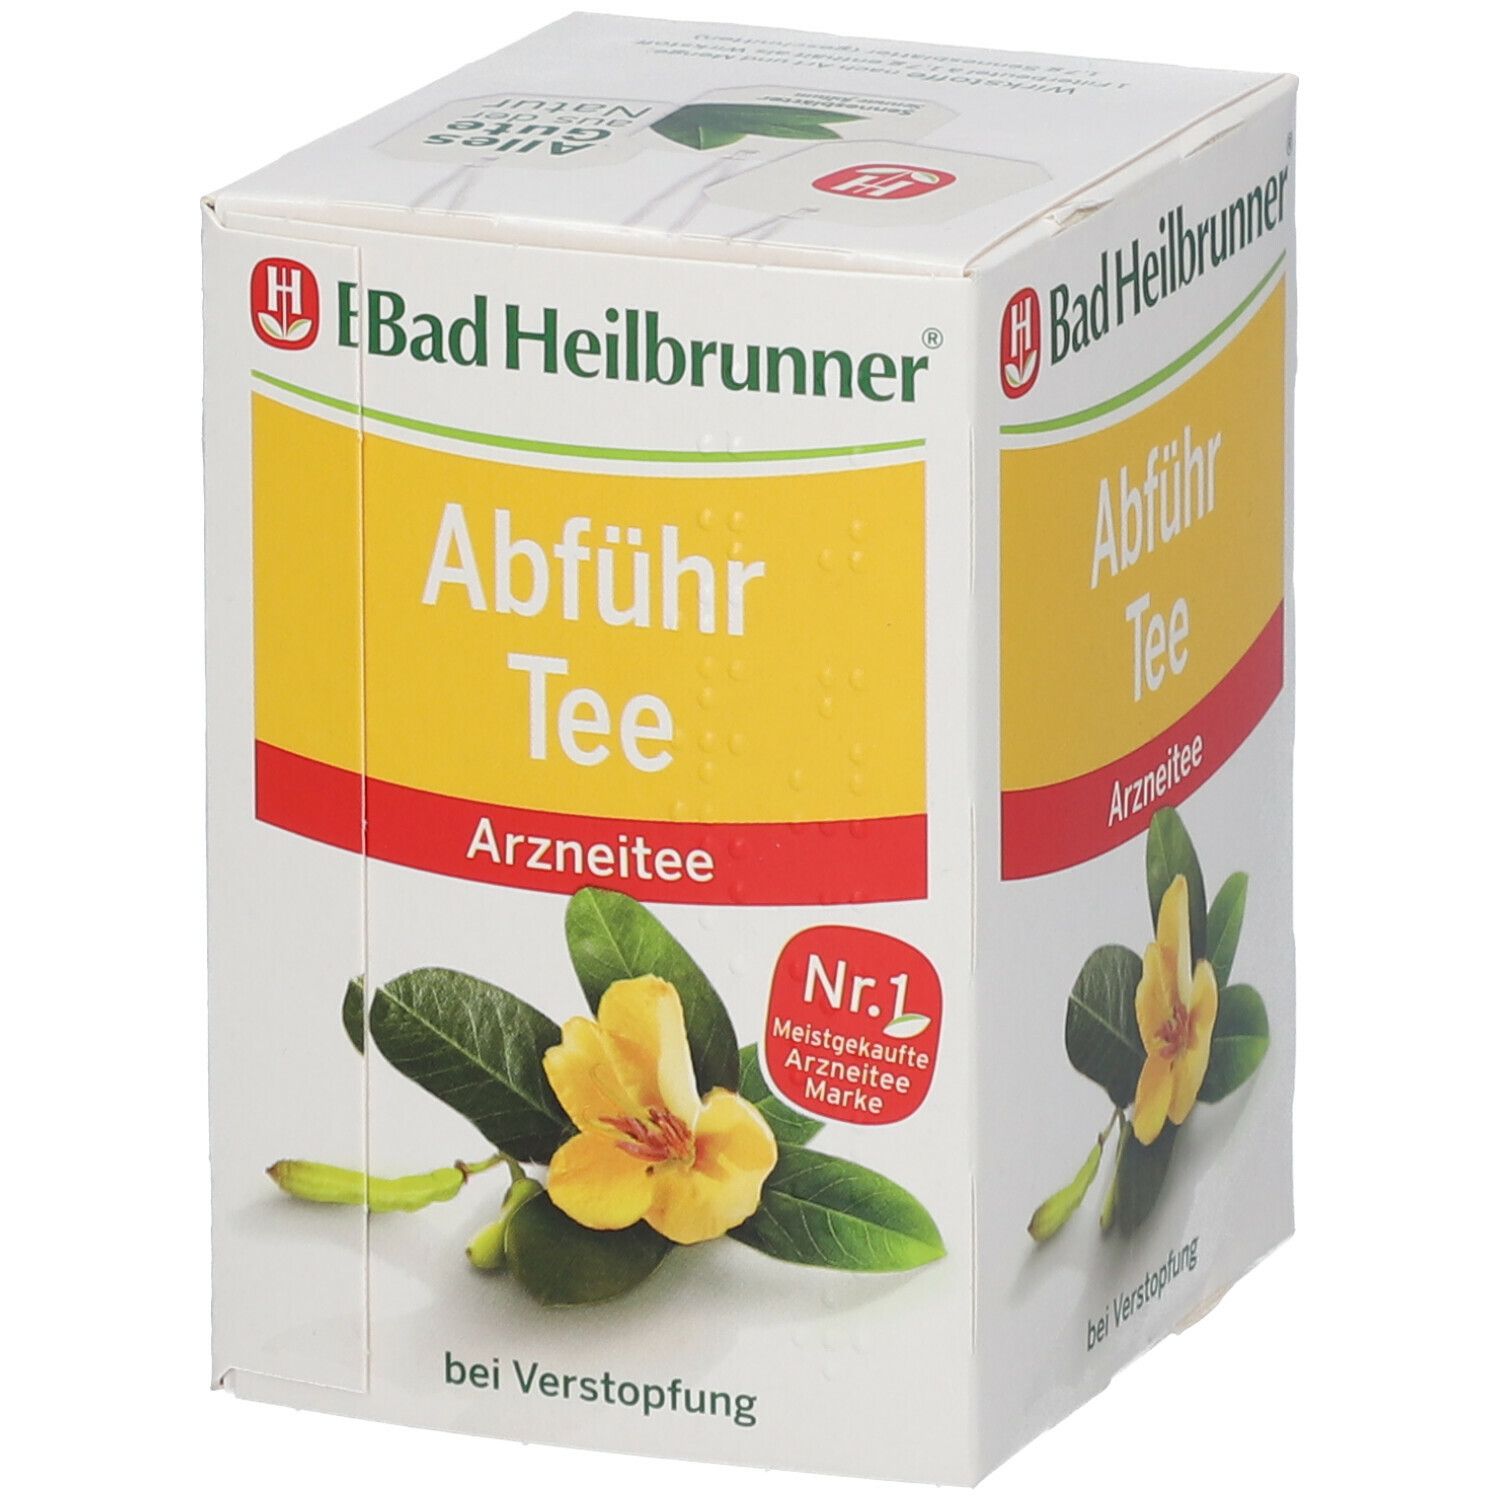 Bad Heilbrunner® Abführ Tee